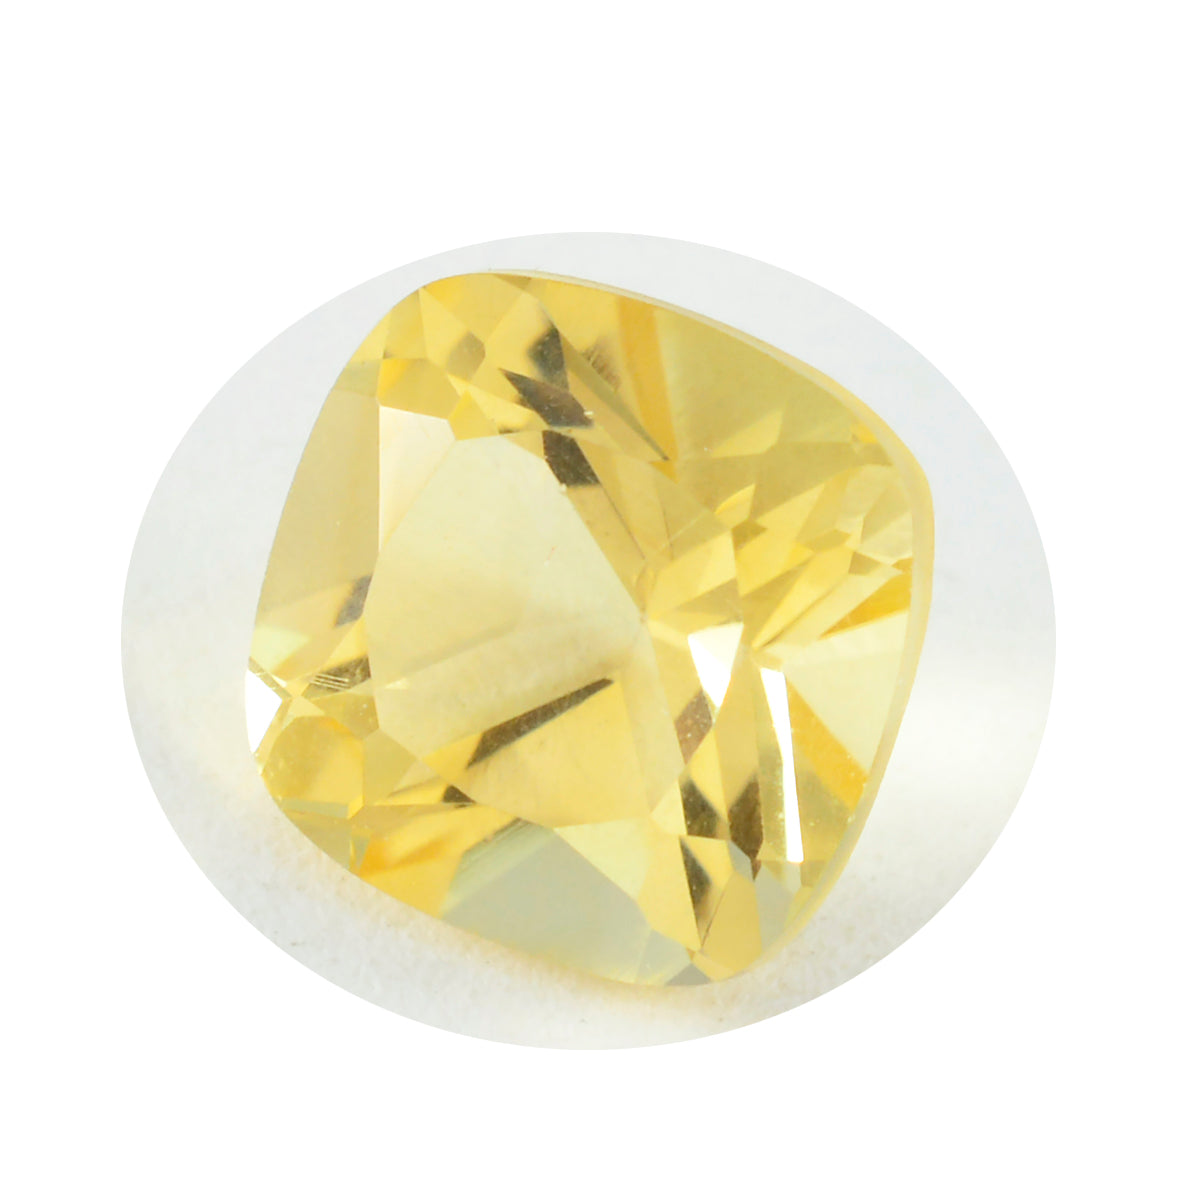 Riyogems 1 pièce de citrine jaune véritable à facettes 13x13mm en forme de coussin, pierres précieuses de qualité attrayantes